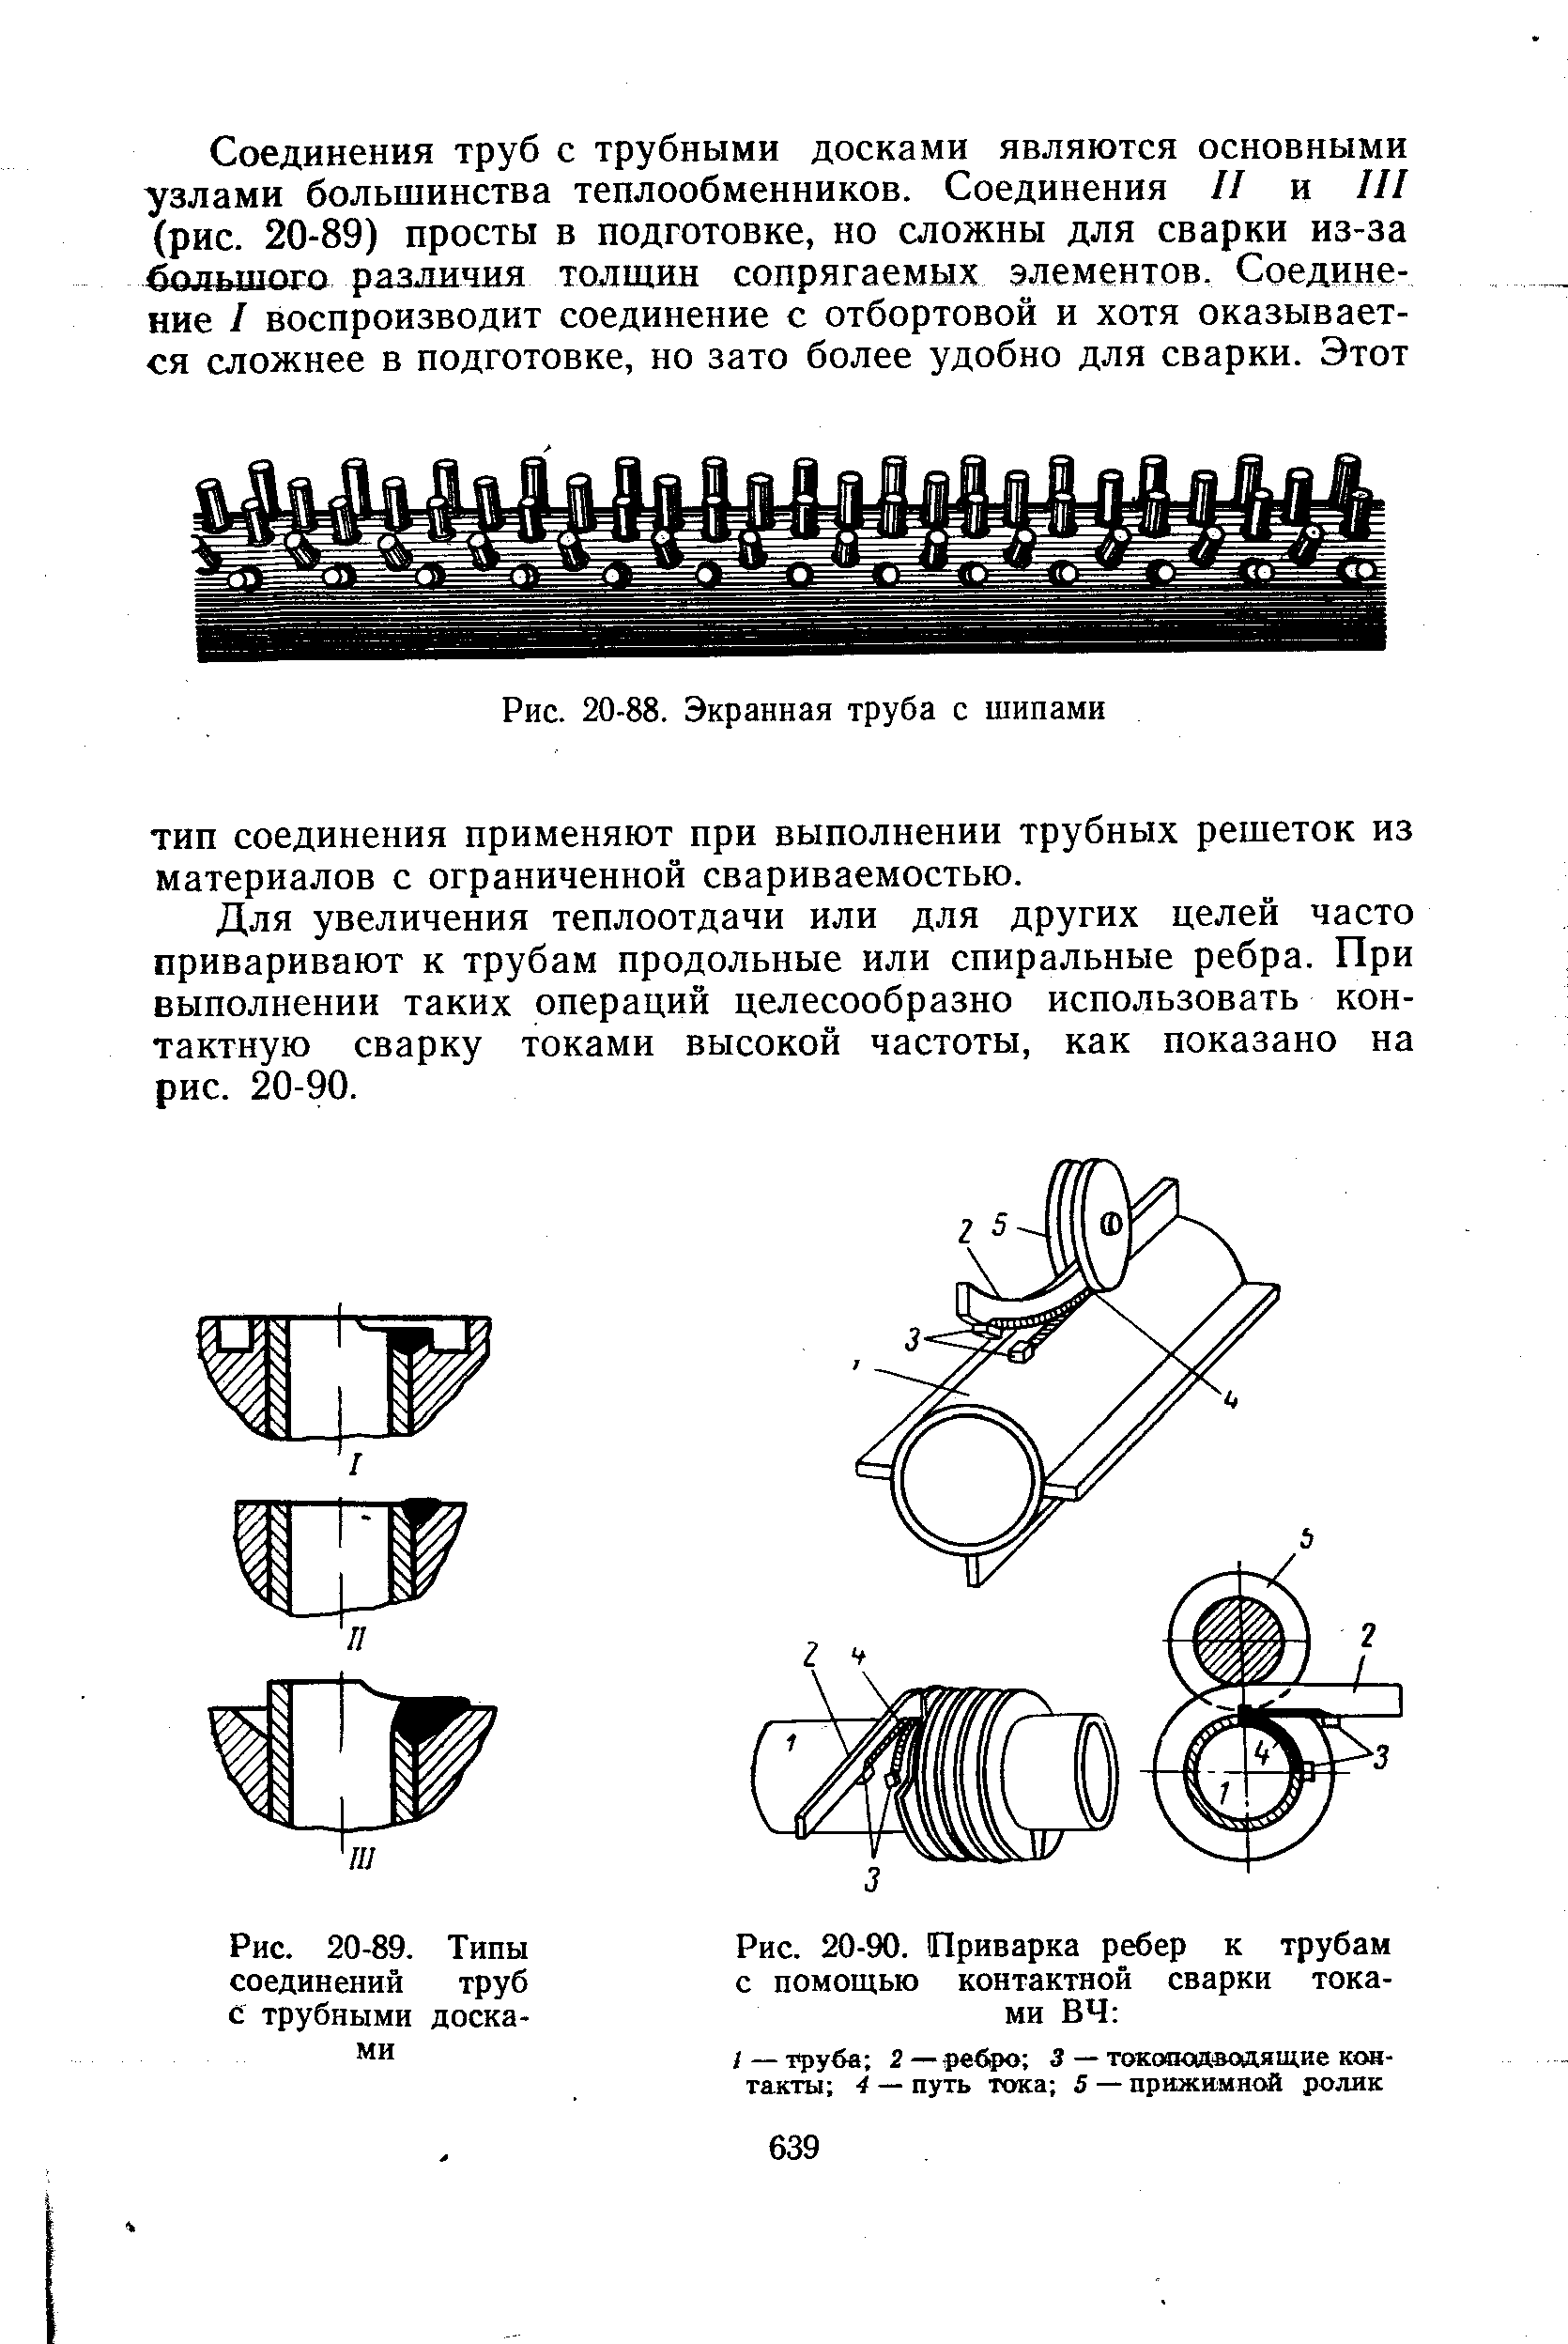 Рис. 20-89. Типы соединений труб с трубными досками
